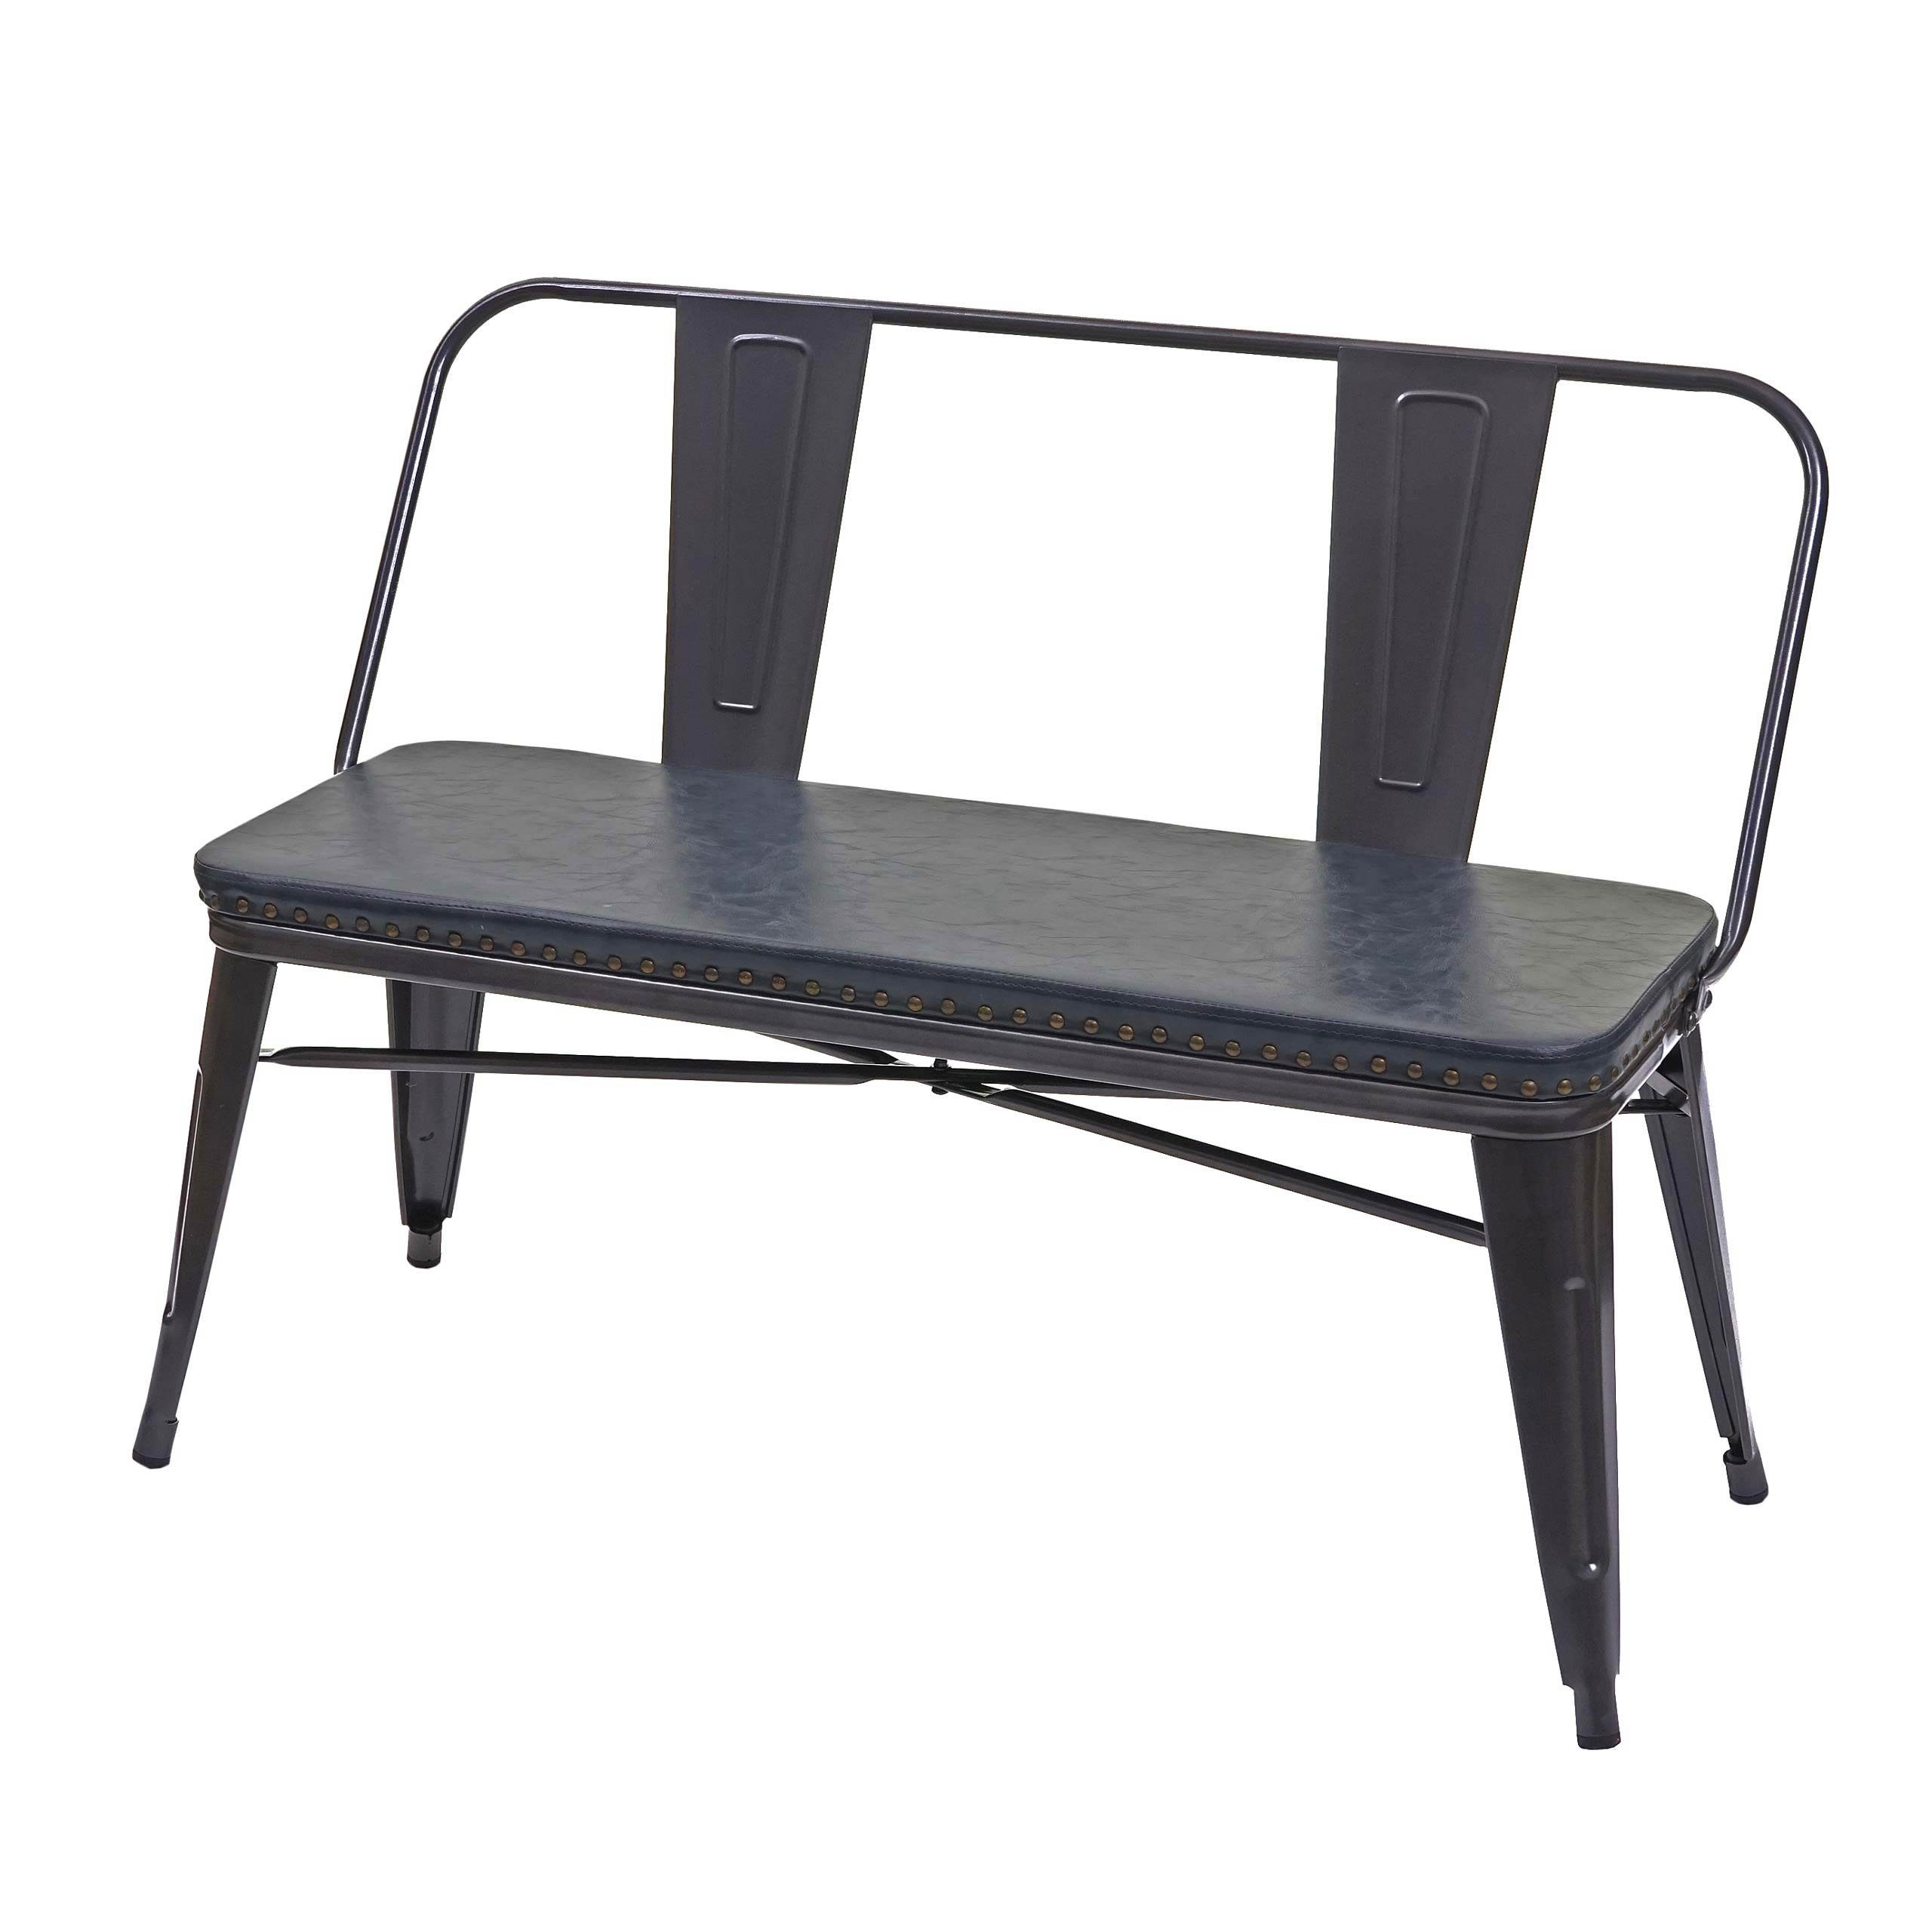 MCW Sitzbank MCW-H10-SB, Gepolsterte Sitzfläche aus Kunstleder, Abgerundete Ecken und Kanten grau, schwarz | grau